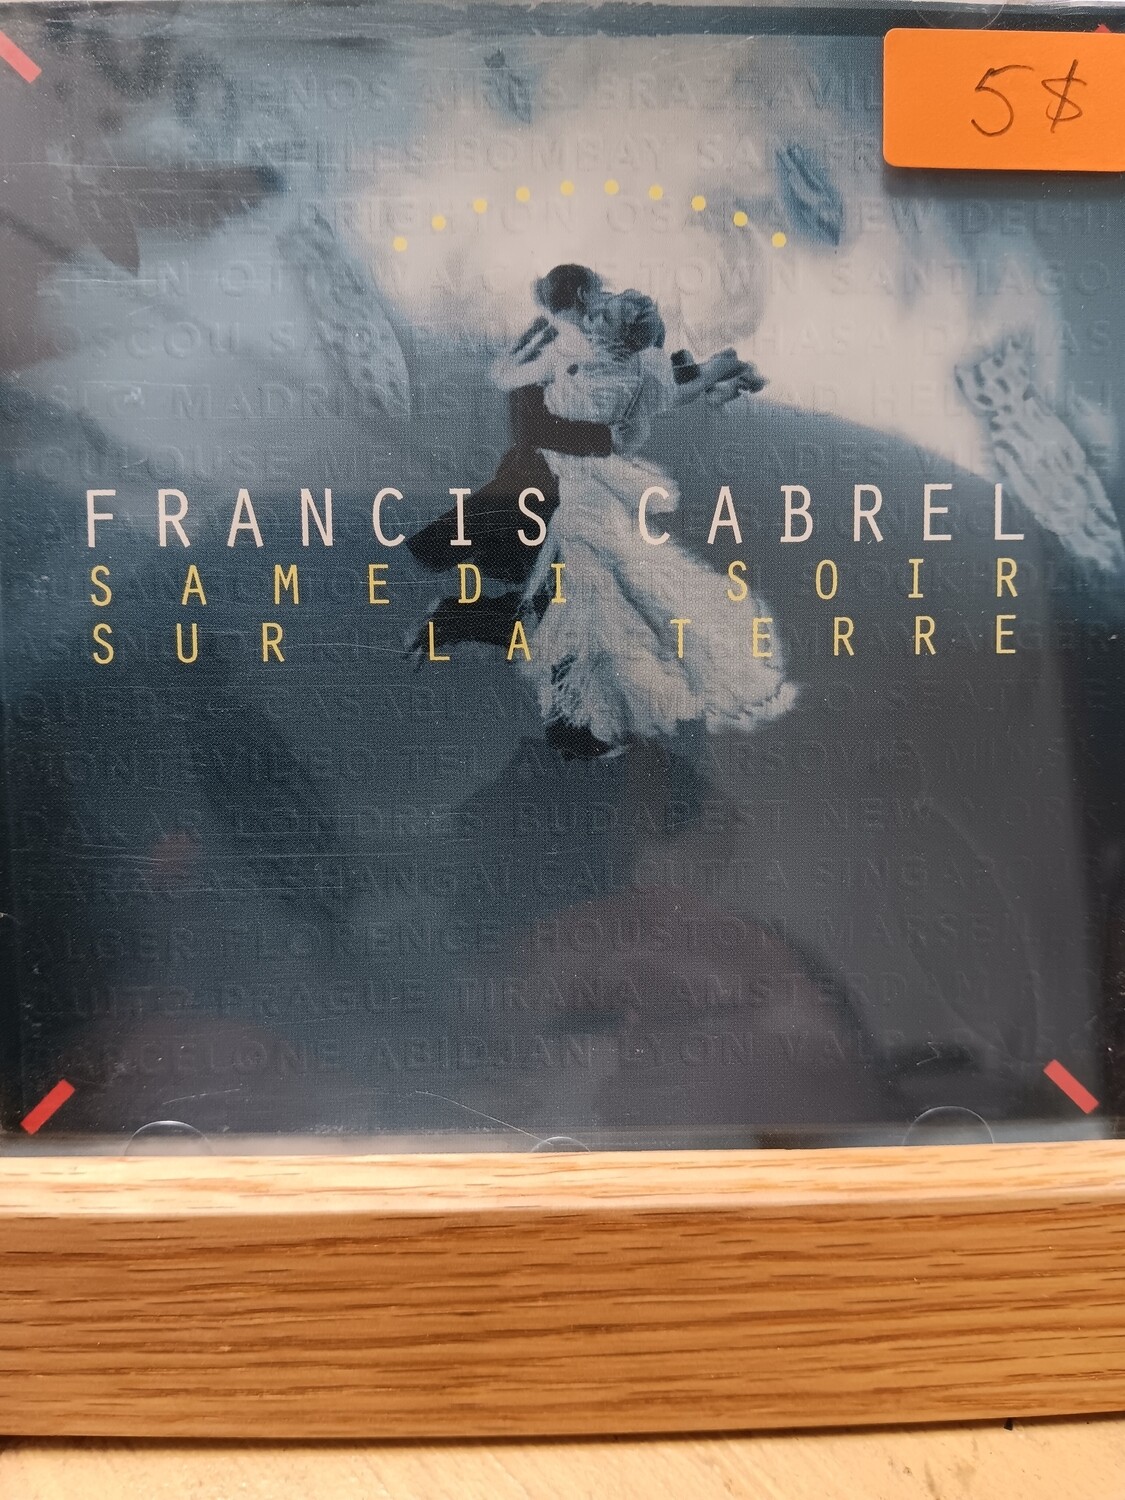 Francis Cabrel - Samedi soir sur la terre (CD)